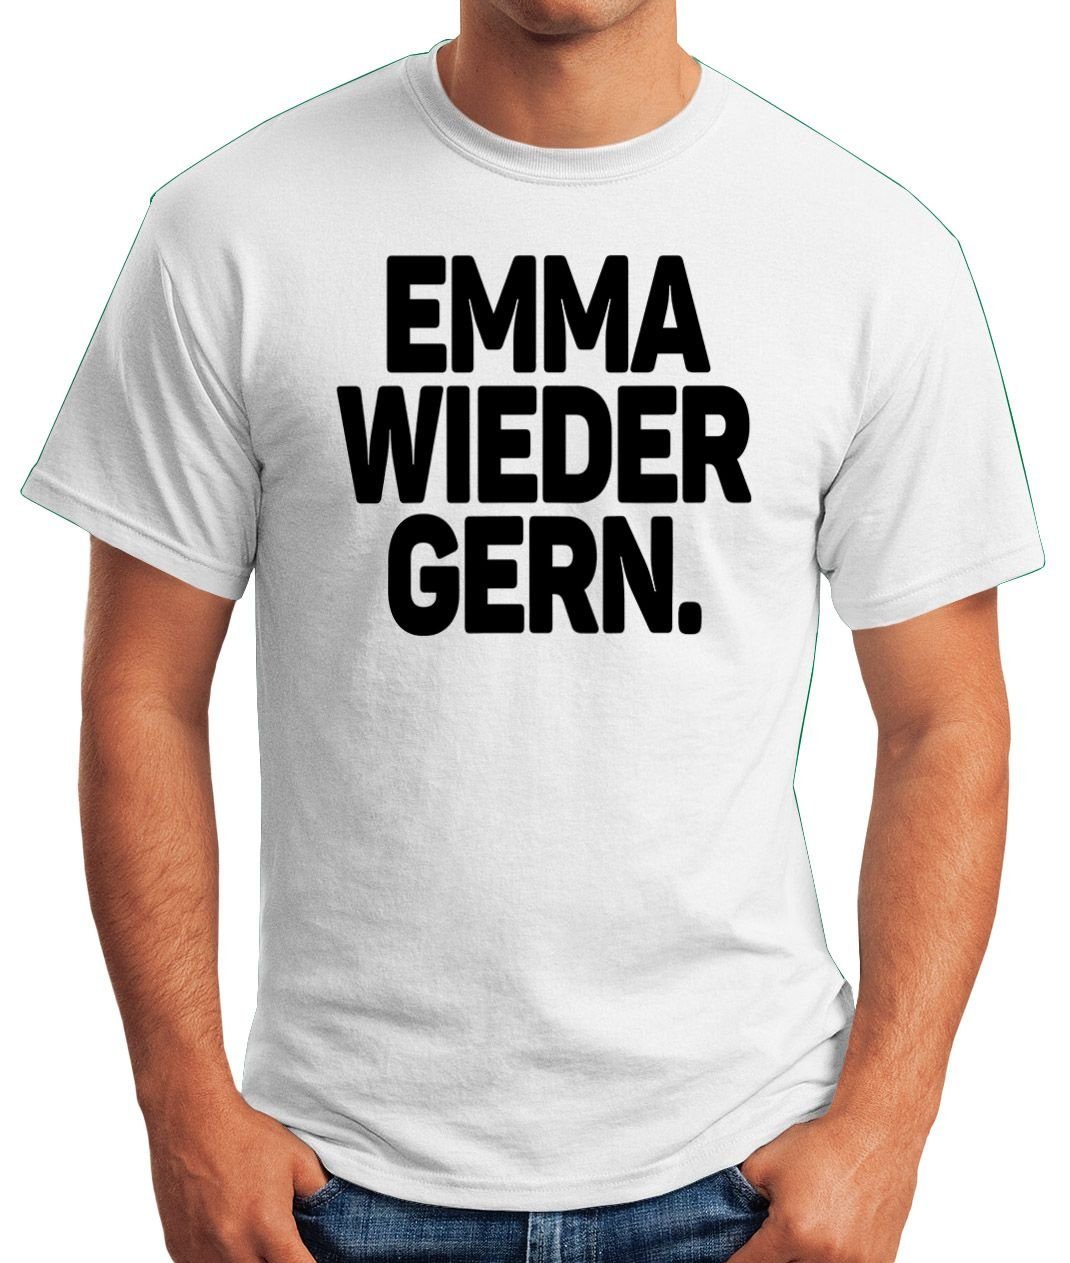 Fun-Shirt Print-Shirt Emma Moonworks® gern Spruch Oberteil wieder Festival Party T-Shirt Print mit Rave Herren weiß MoonWorks Techno